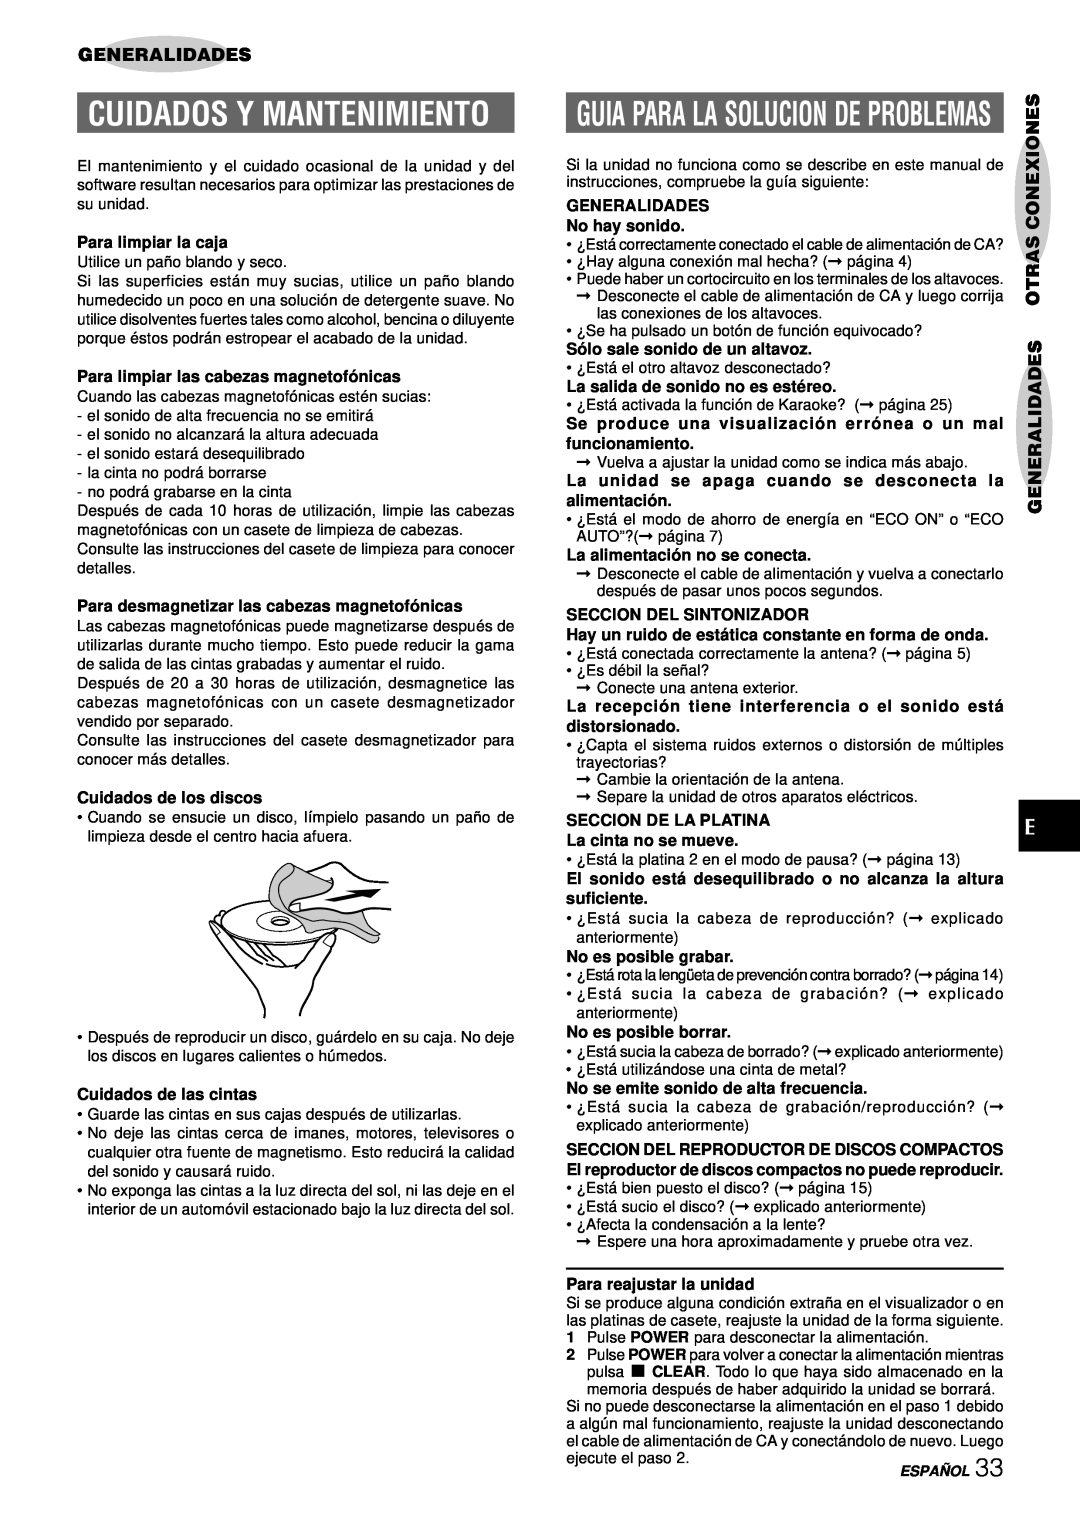 Aiwa NSX-DS8 manual Cuidados Y Mantenimiento, Guia Para La Solucion De Problemas, Generalidades Otras Conexiones 